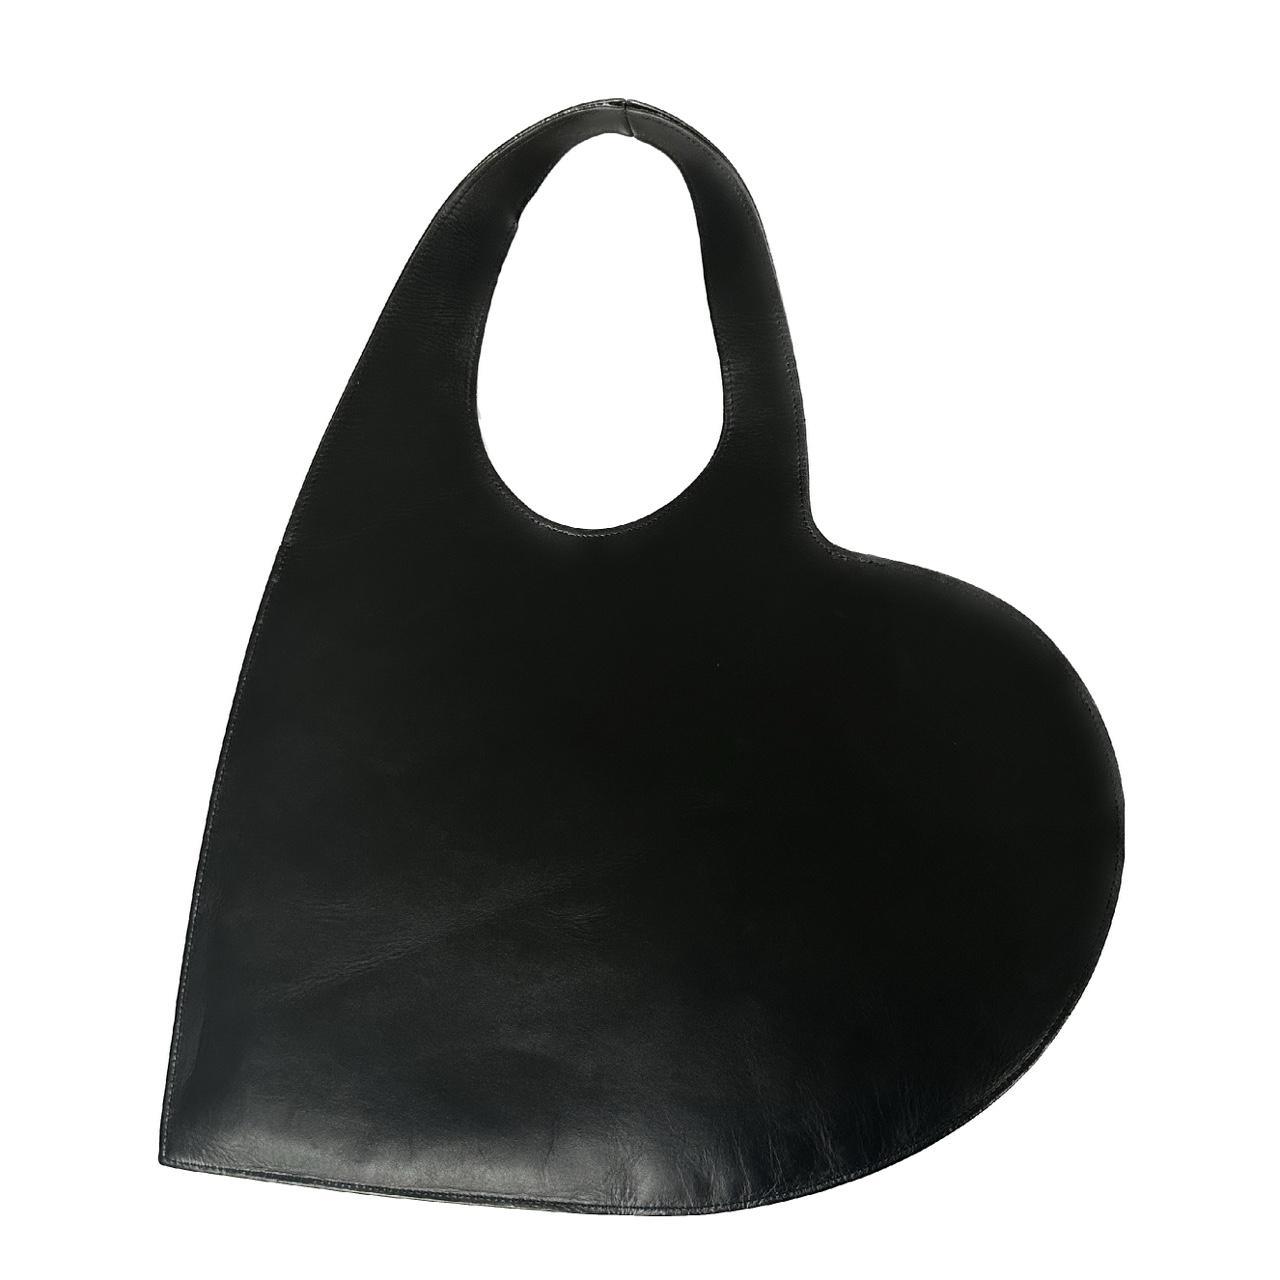 Coperni Women's Black Bag (2)